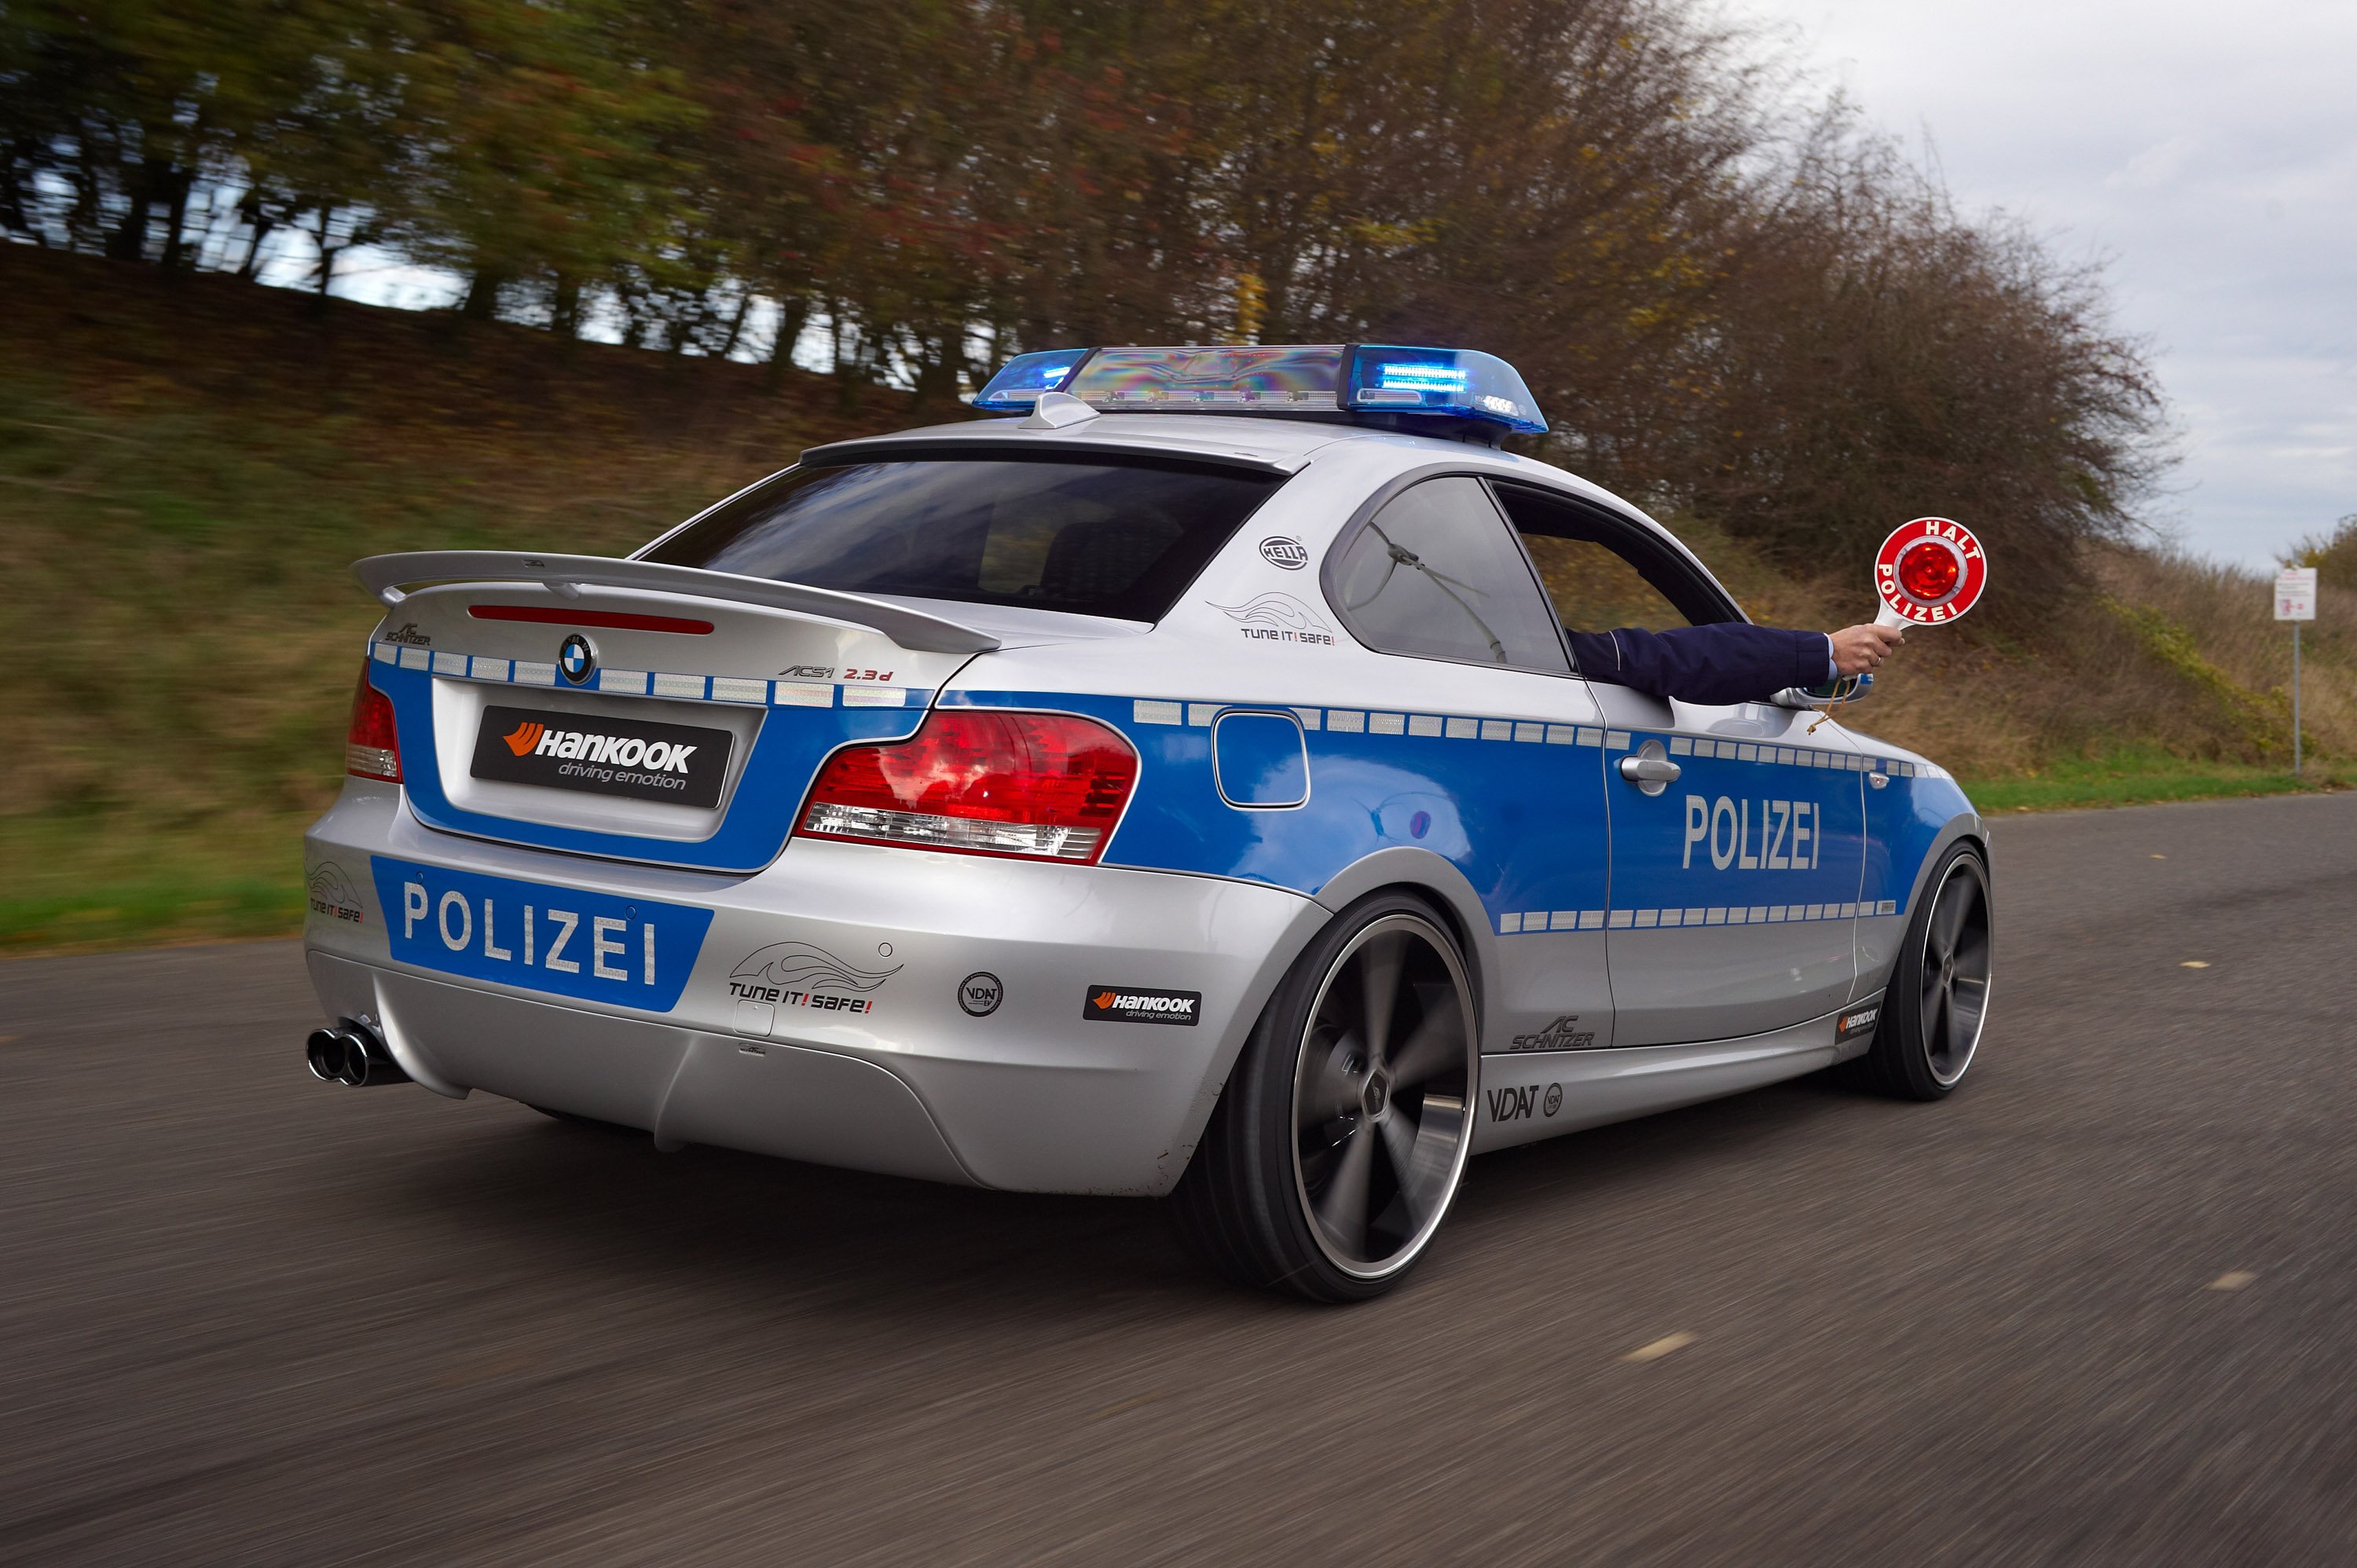 Зеленая полицейская машина. E60 BMW Полицейская. БМВ е60 ДПС. BMW е60 Police Germany Toy. Полицейская машина.